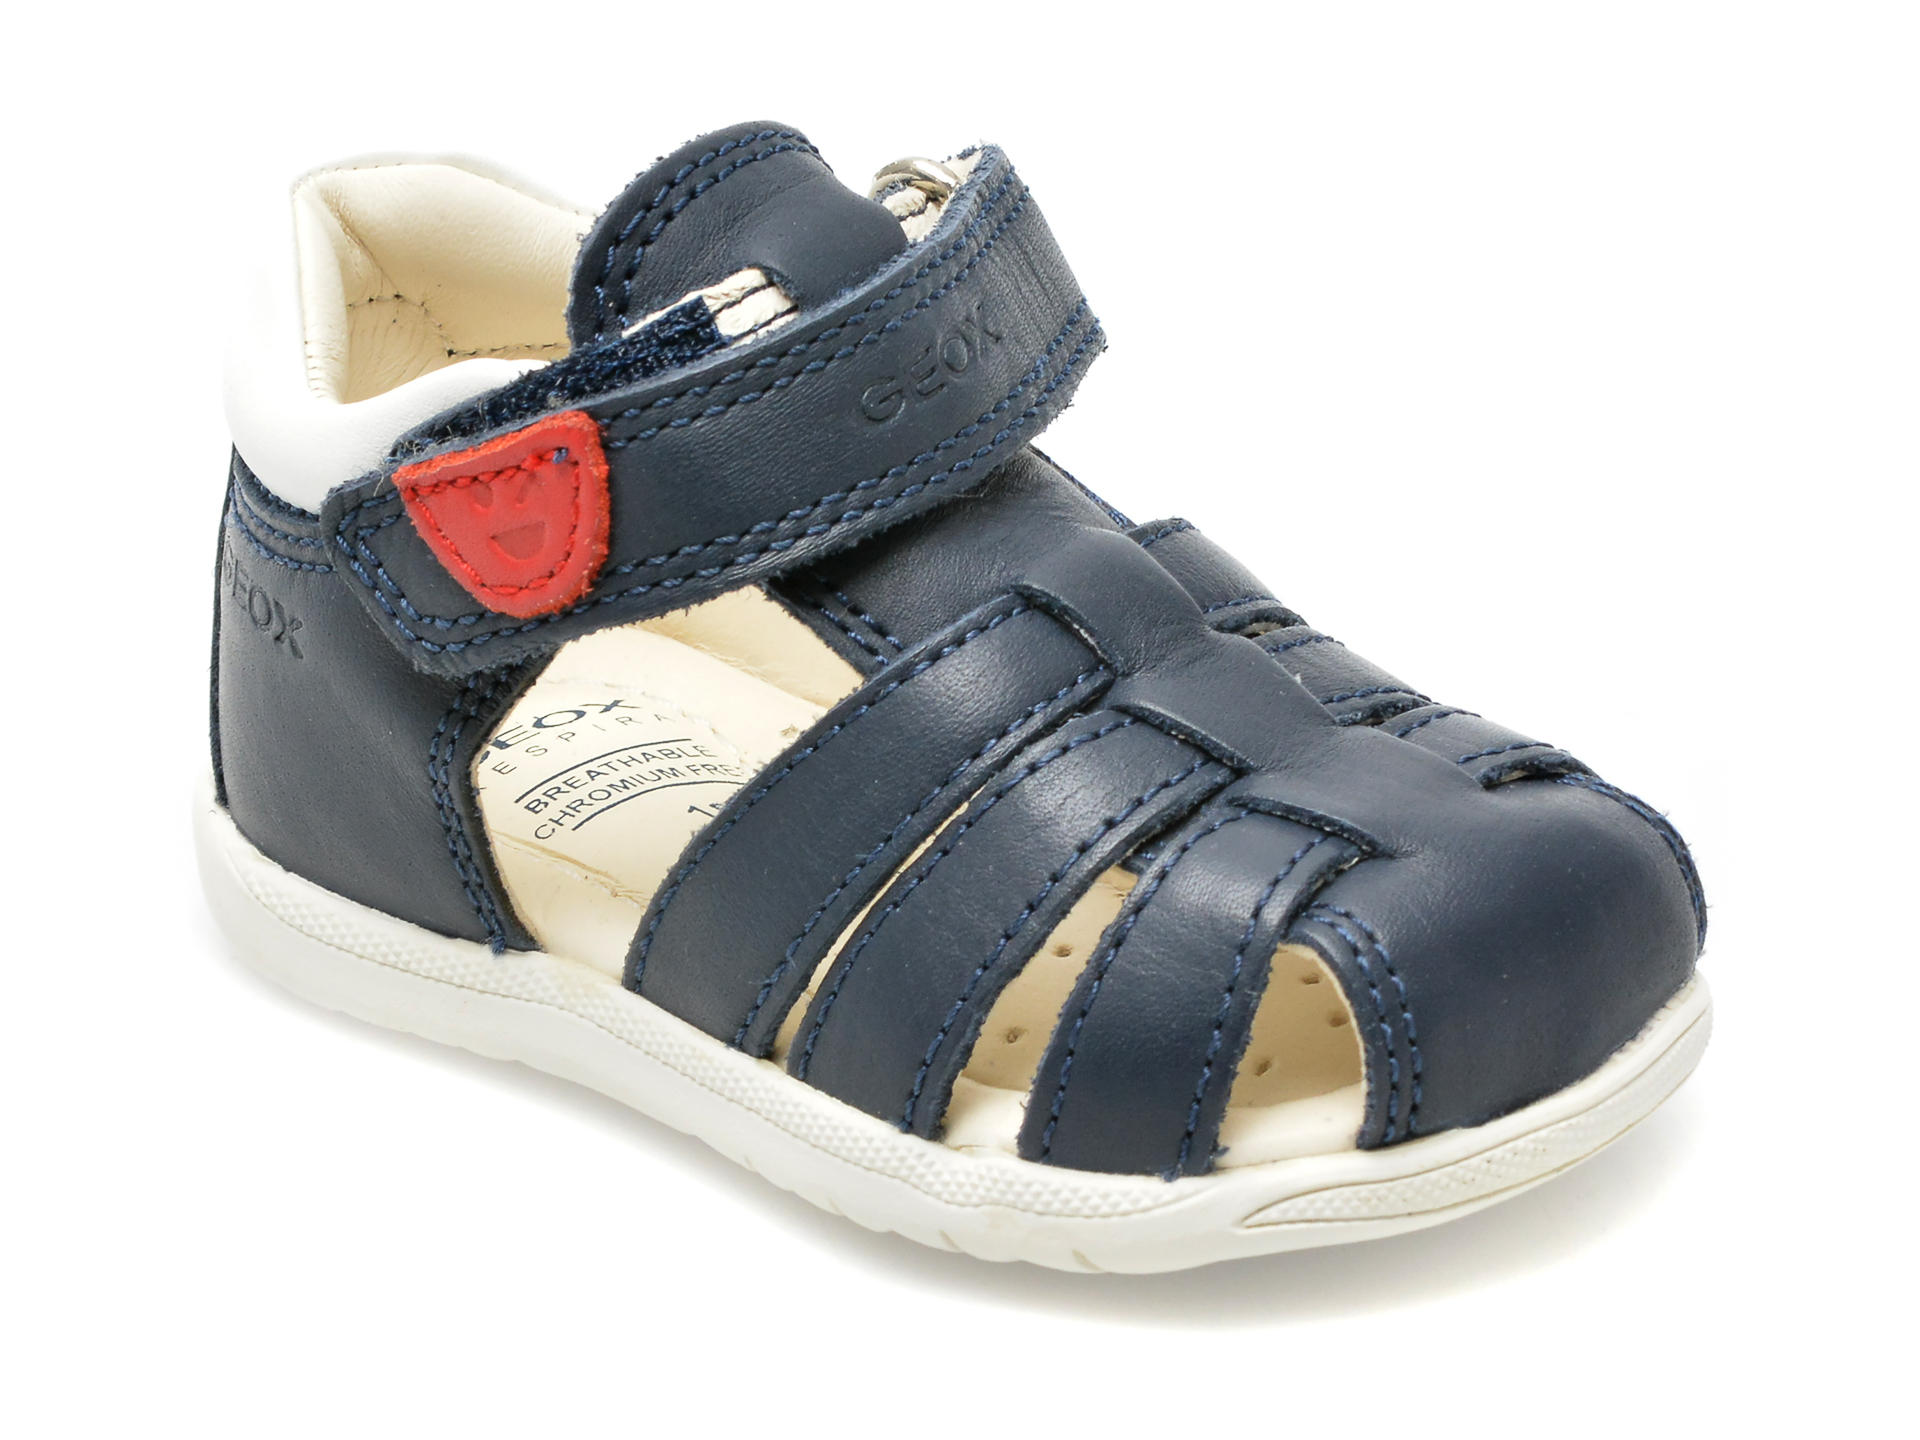 Pantofi GEOX bleumarin, B254VA, din piele naturala BAIETI 2023-06-04